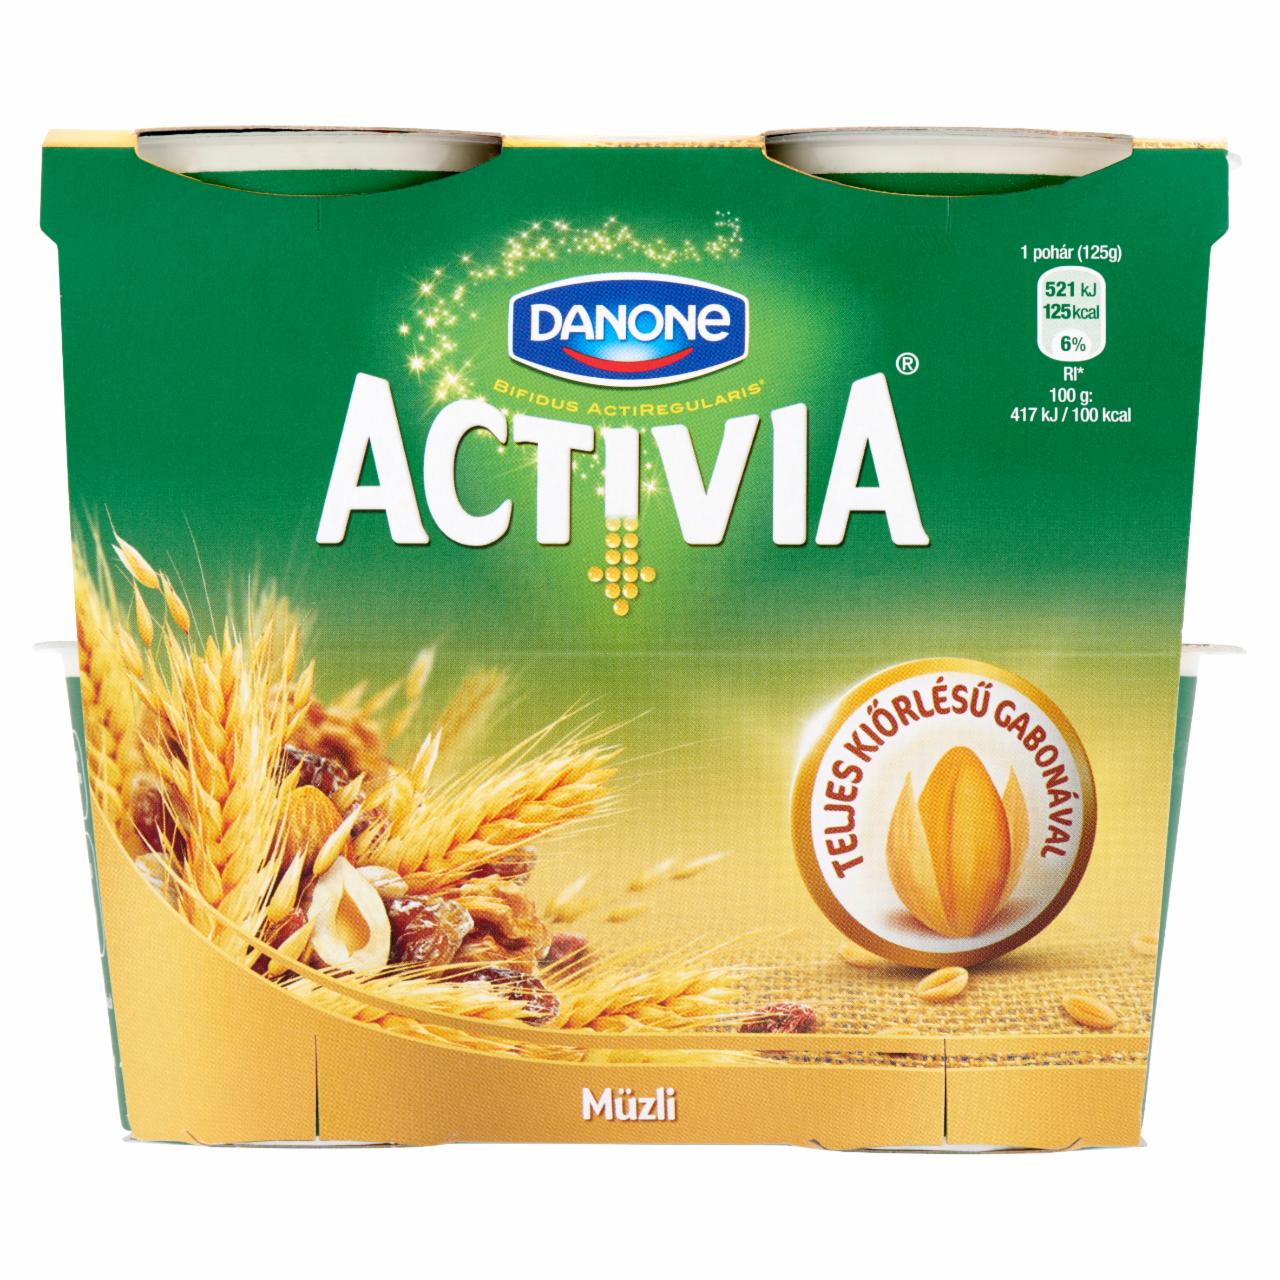 Képek - Danone Activia élőflórás, zsírszegény joghurt mazsolával és teljes kiőrlésű gabonákkal 4 x 125 g